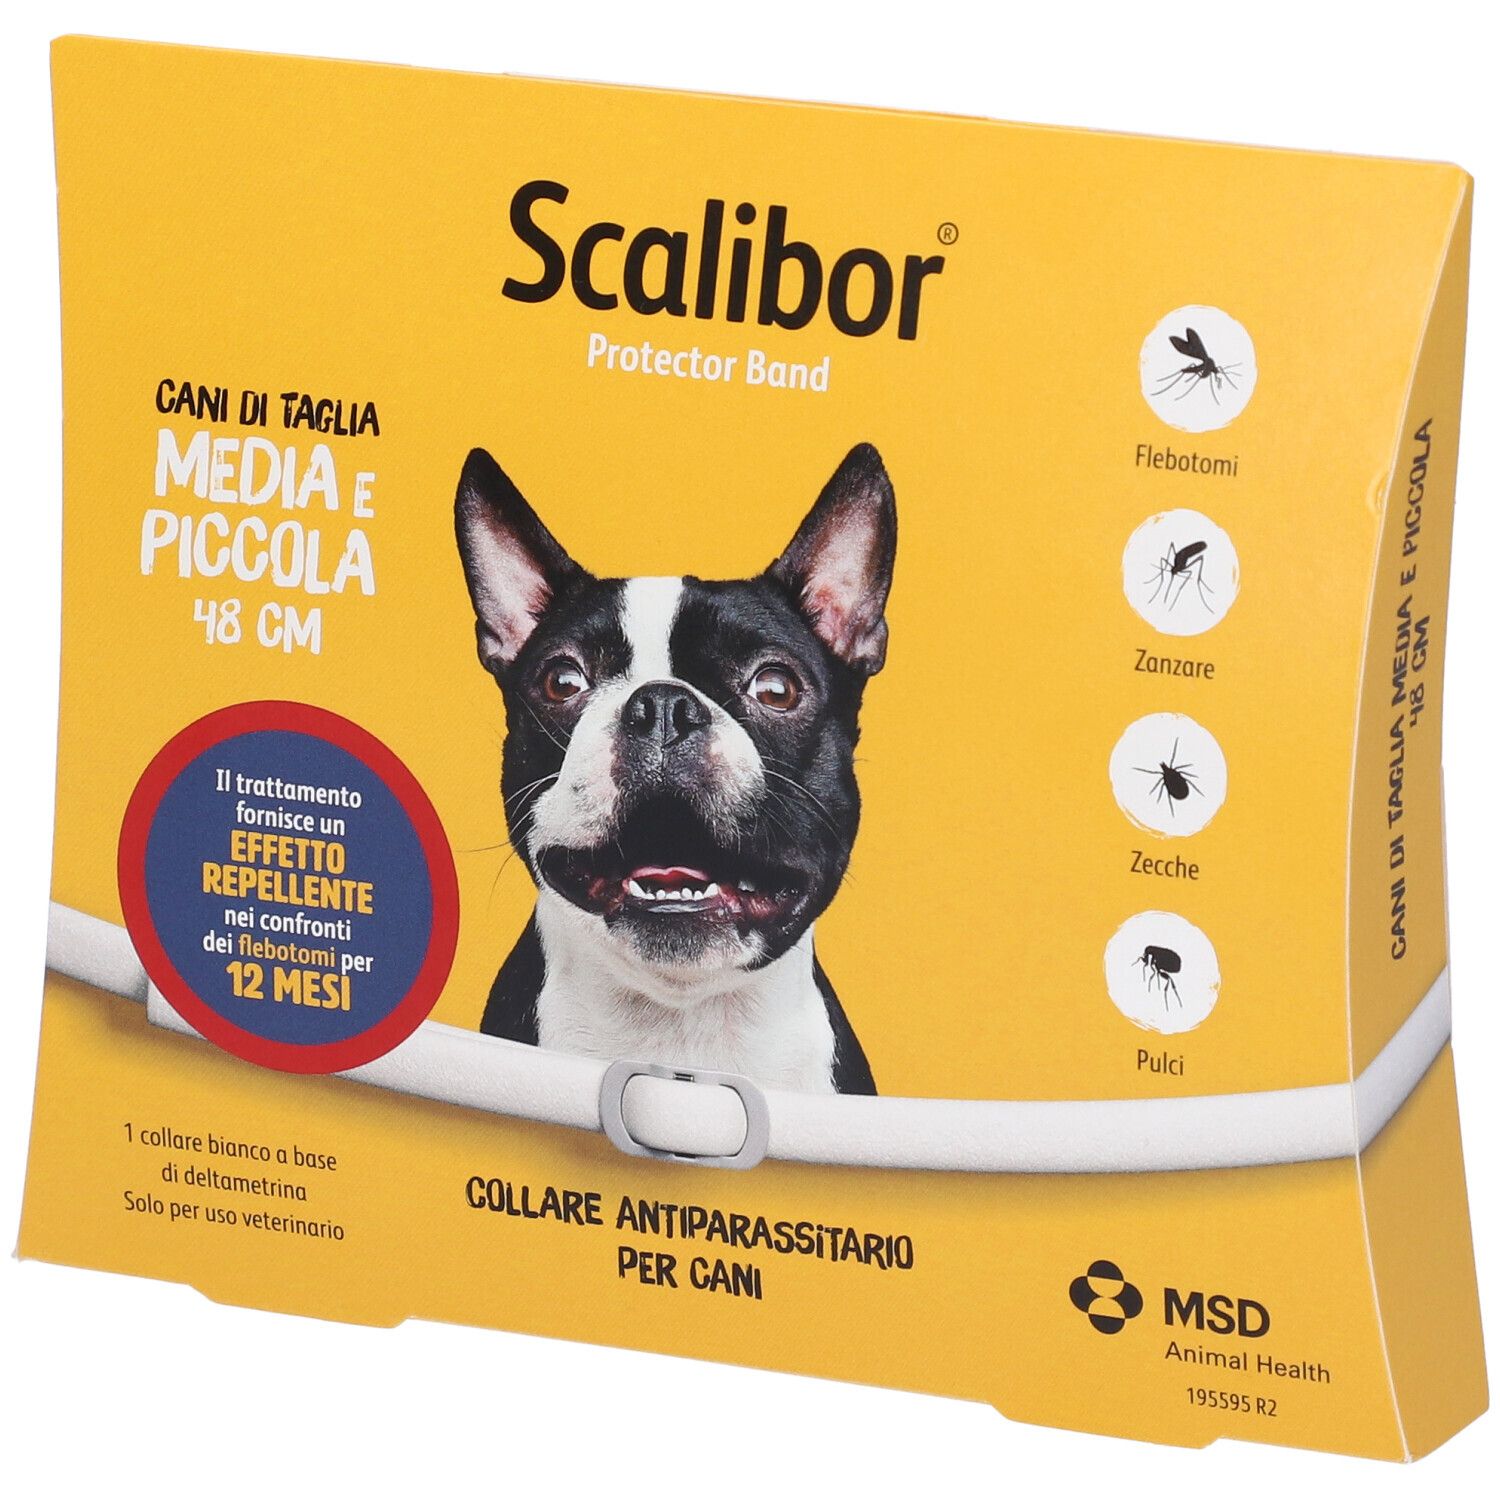 msd animal health scalibor protectorband collare antiparassitario per cani taglia medio/piccola 48cm